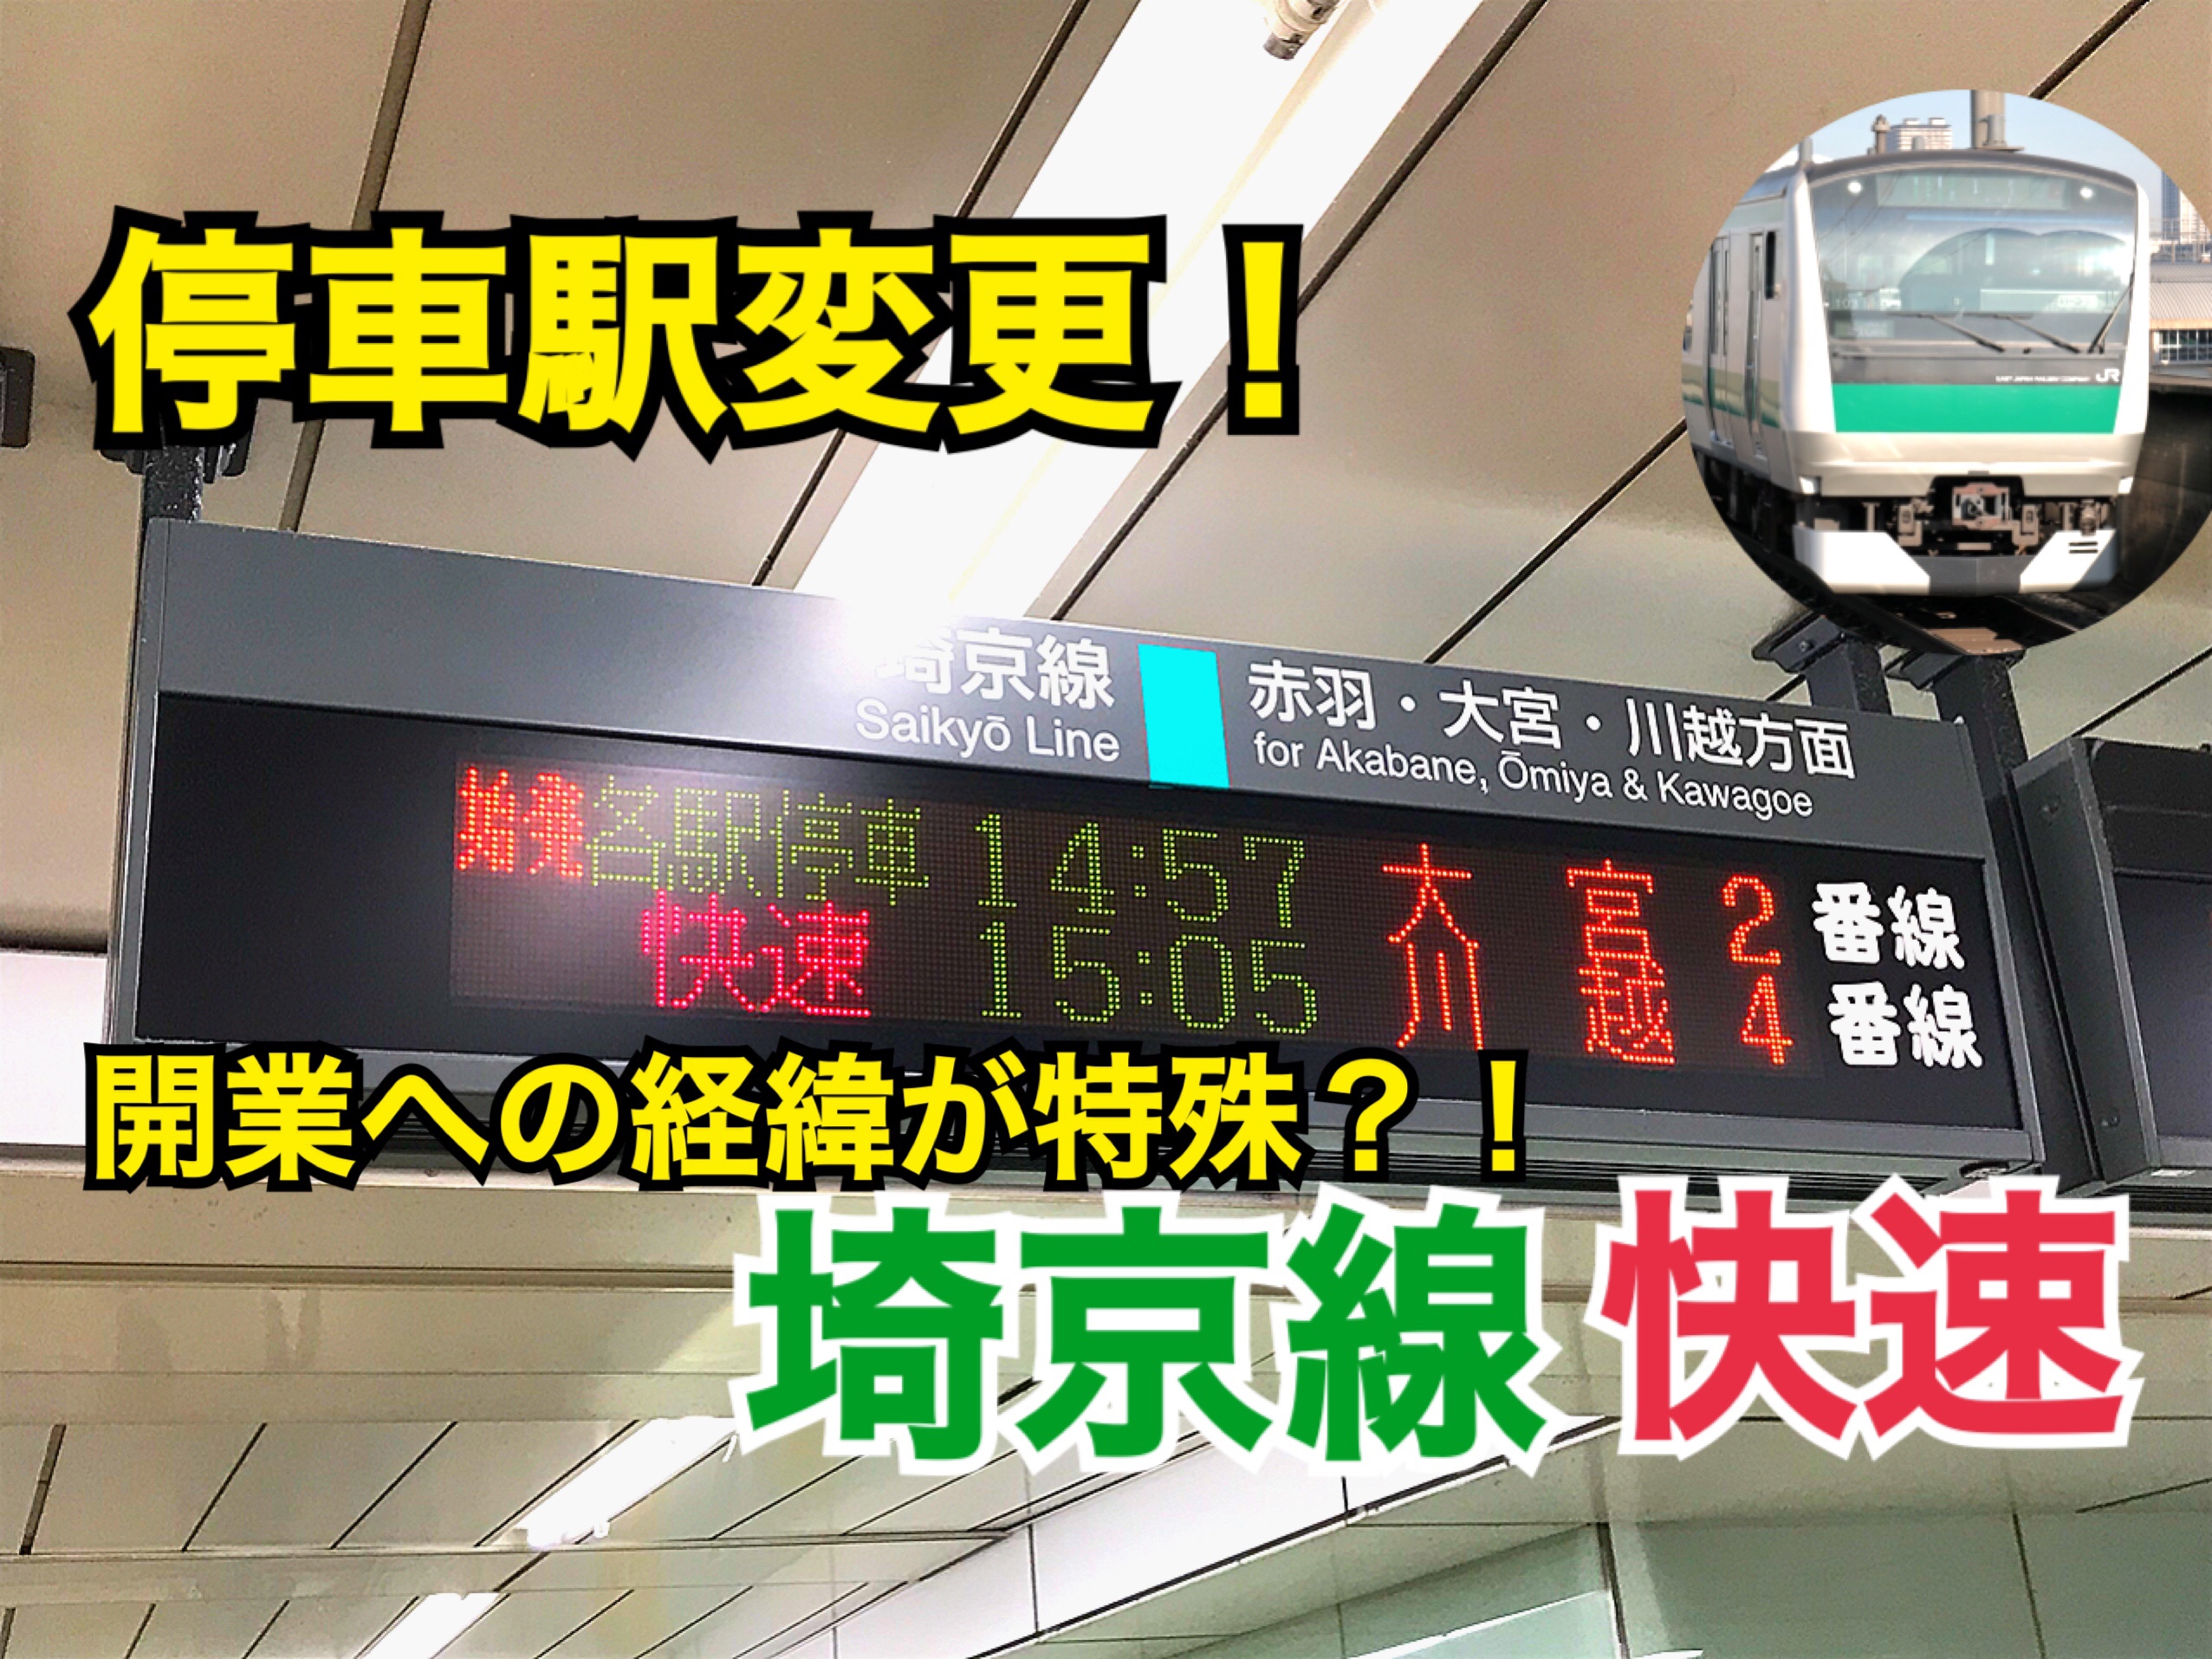 停車駅変更！埼京線快速の停車駅が変わります。 特徴だらけの埼京線は乗ってみる価値あり！【気まぐれ大回り旅】